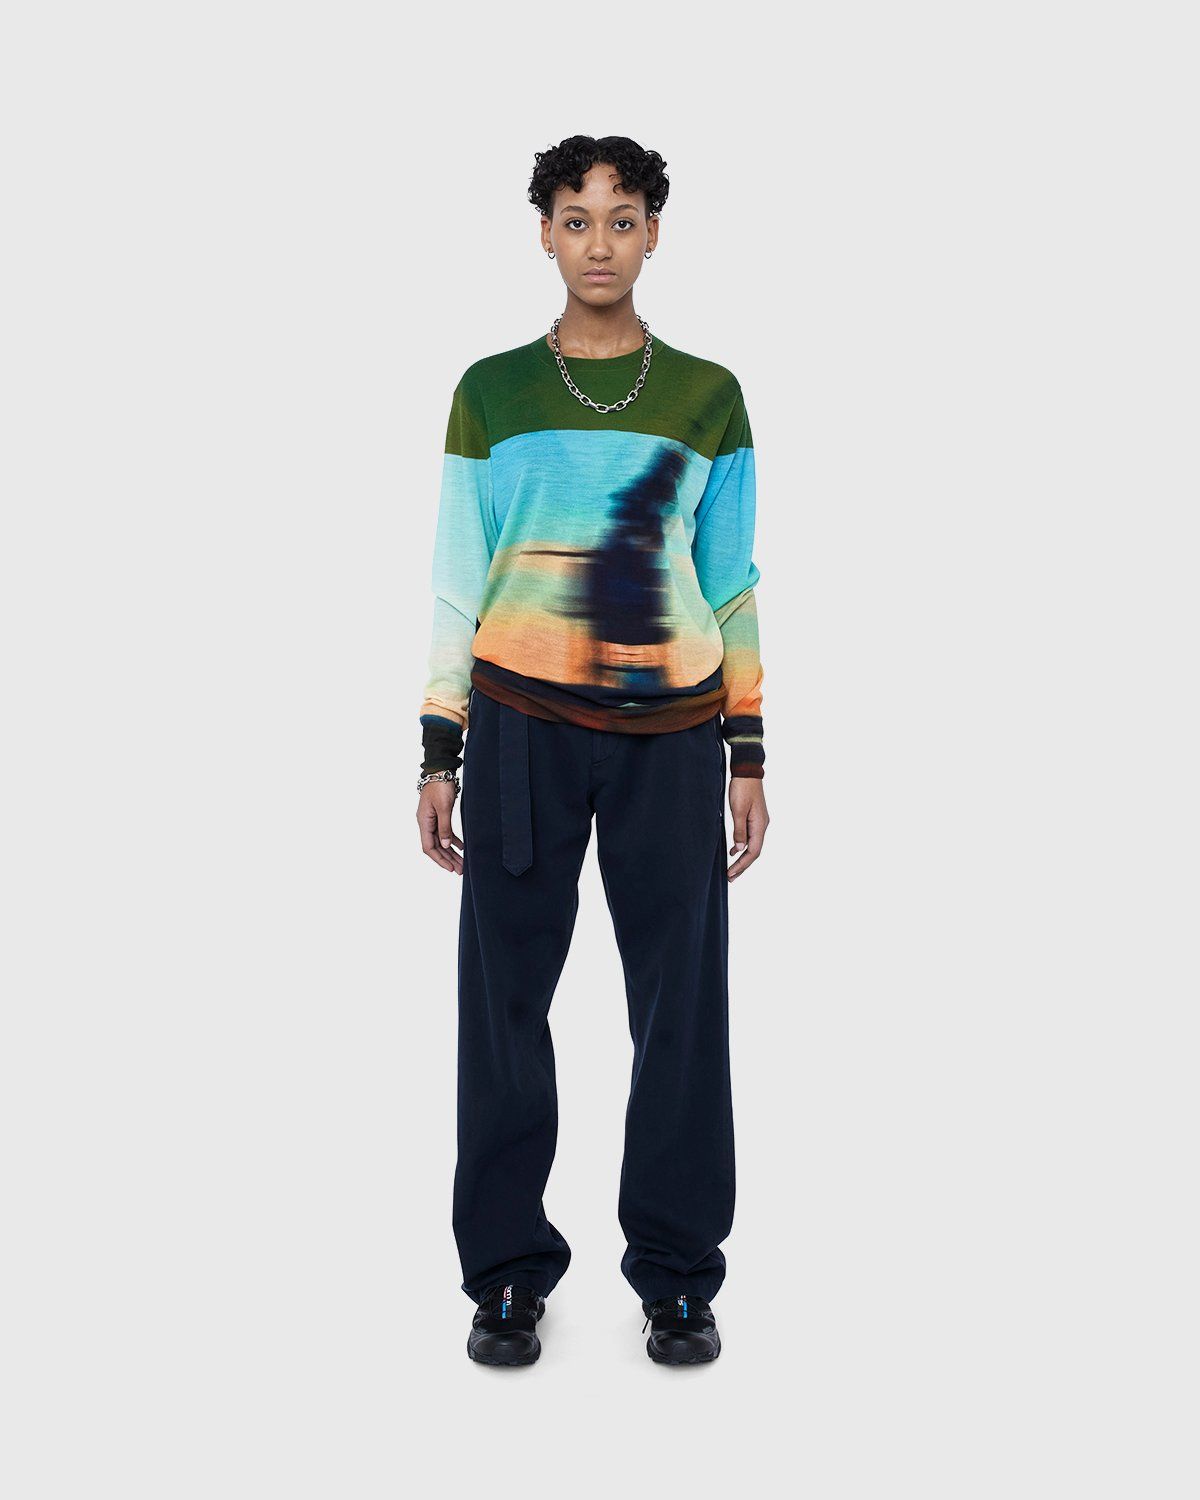 Dries van Noten – Jendrik Merino Sweater Dessin - Knitwear - Multi - Image 5